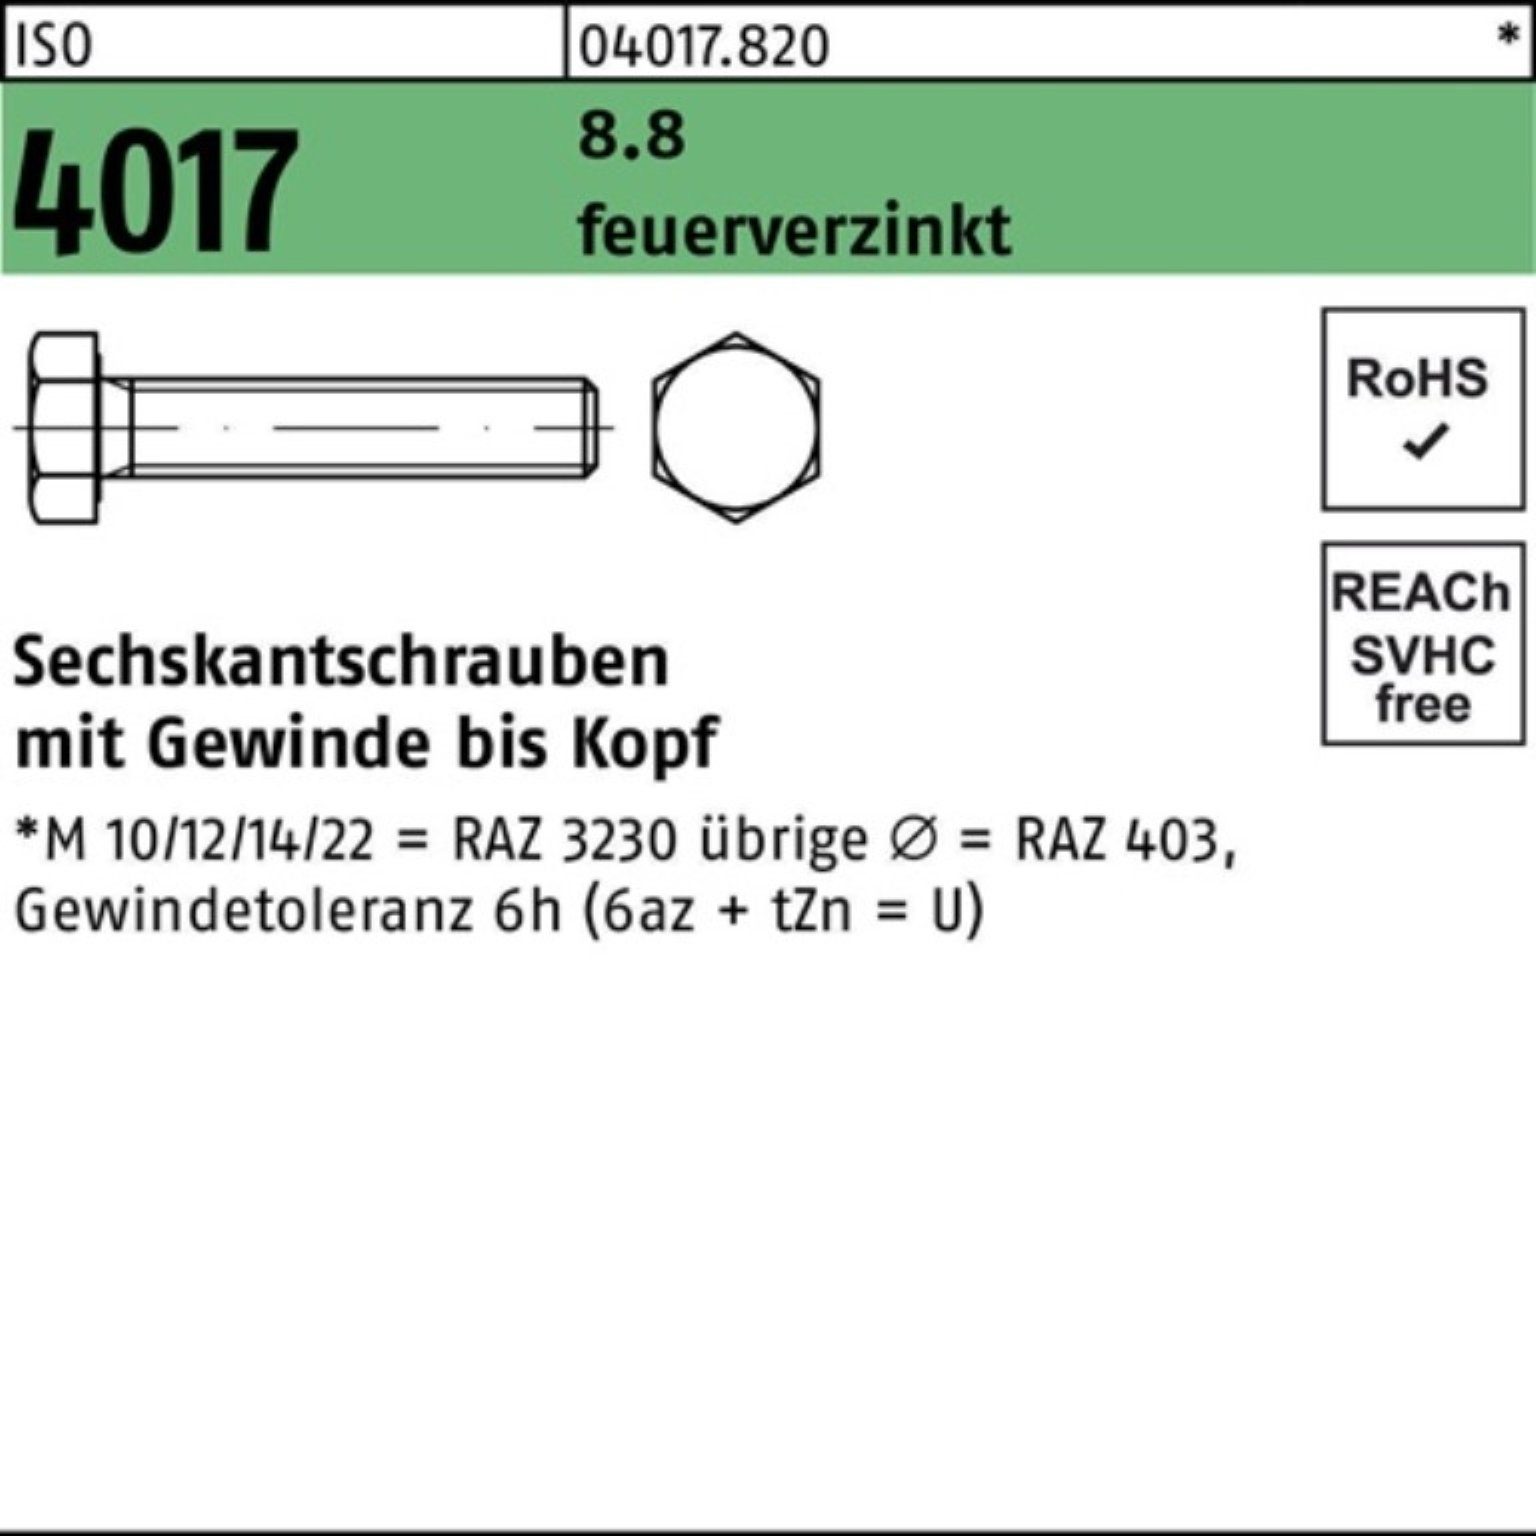 Bufab Sechskantschraube 100er Pack Sechskantschraube ISO 4017 VG M16x 85 8.8 feuerverz. 25 St